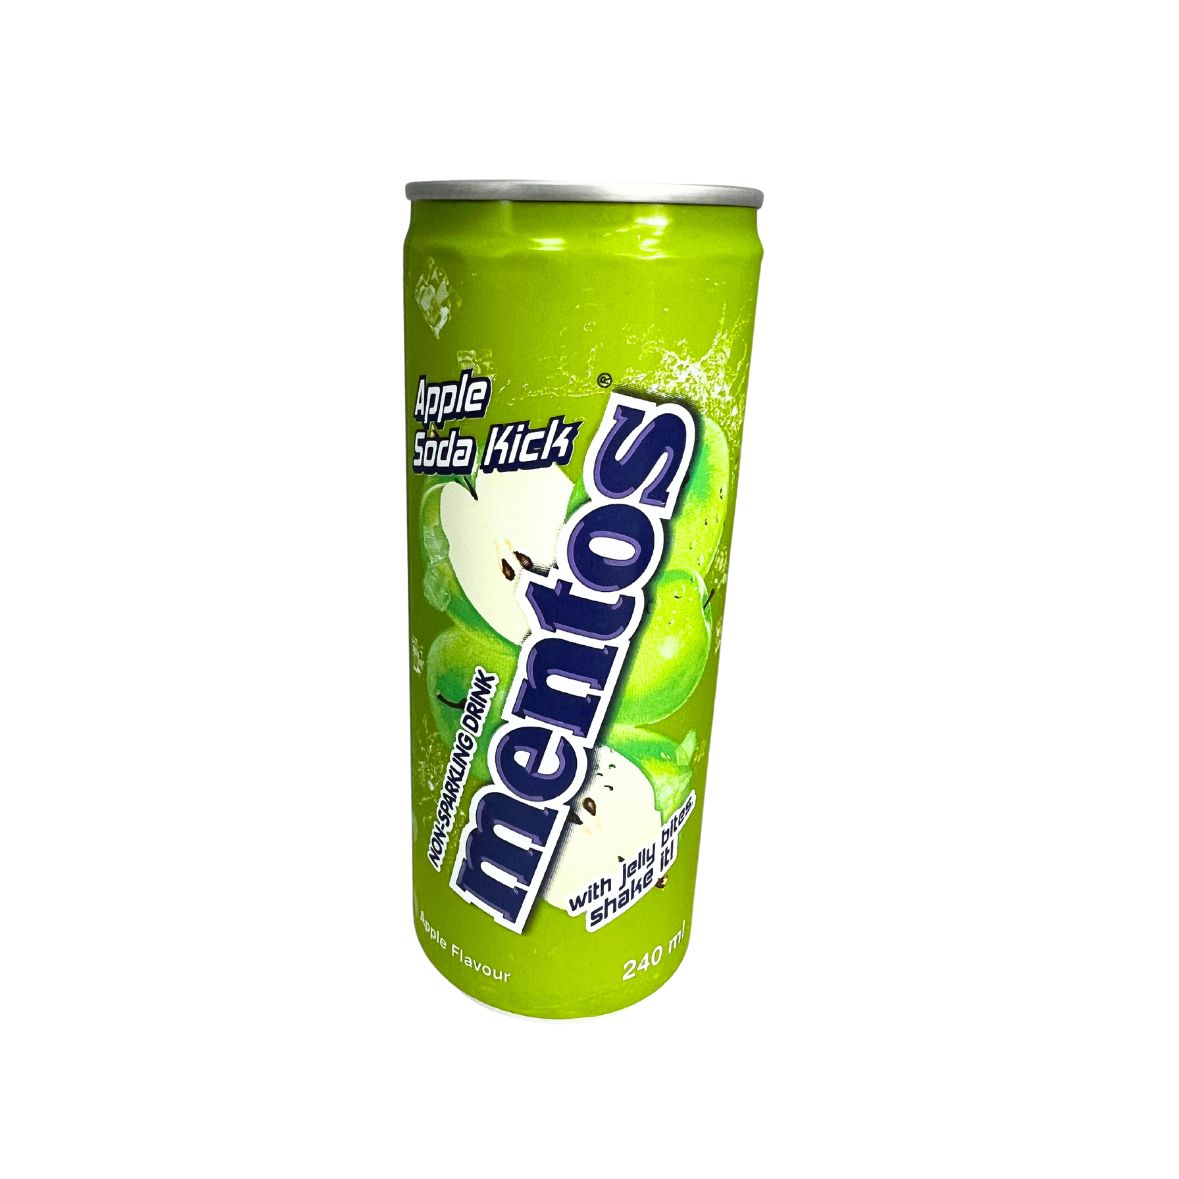 Mentos - Apple Soda Kick Non-Sparkling Drink